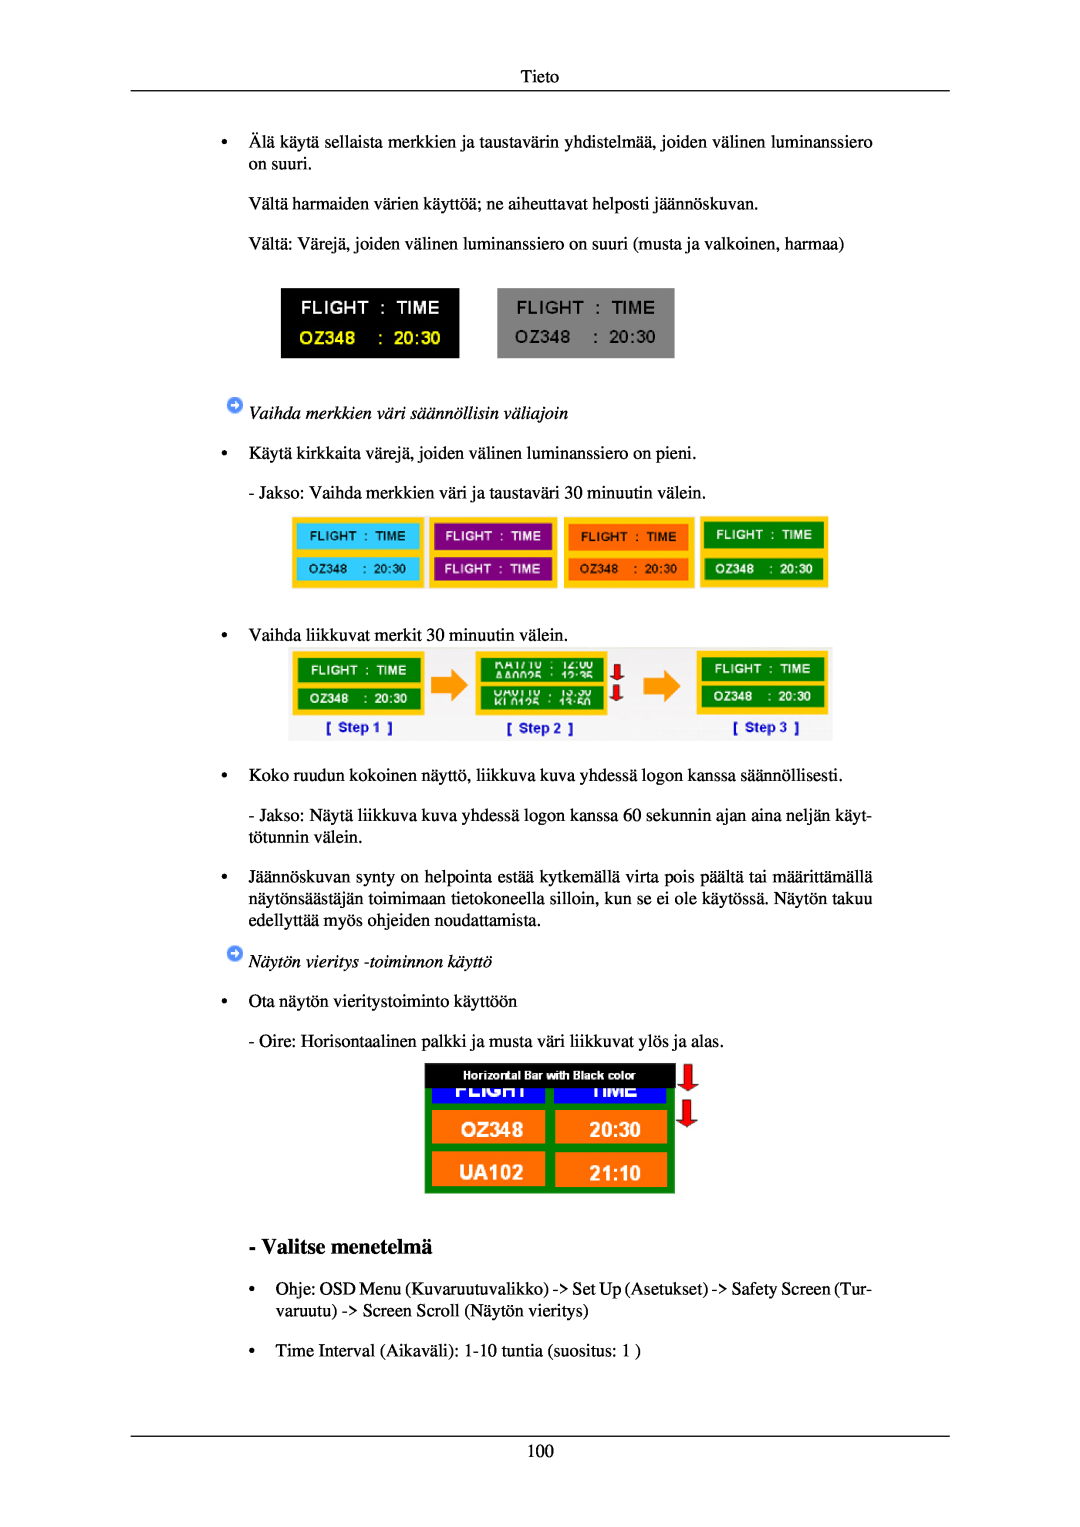 Samsung LH40TCUMBC/EN Valitse menetelmä, Vaihda merkkien väri säännöllisin väliajoin, Näytön vieritys -toiminnon käyttö 